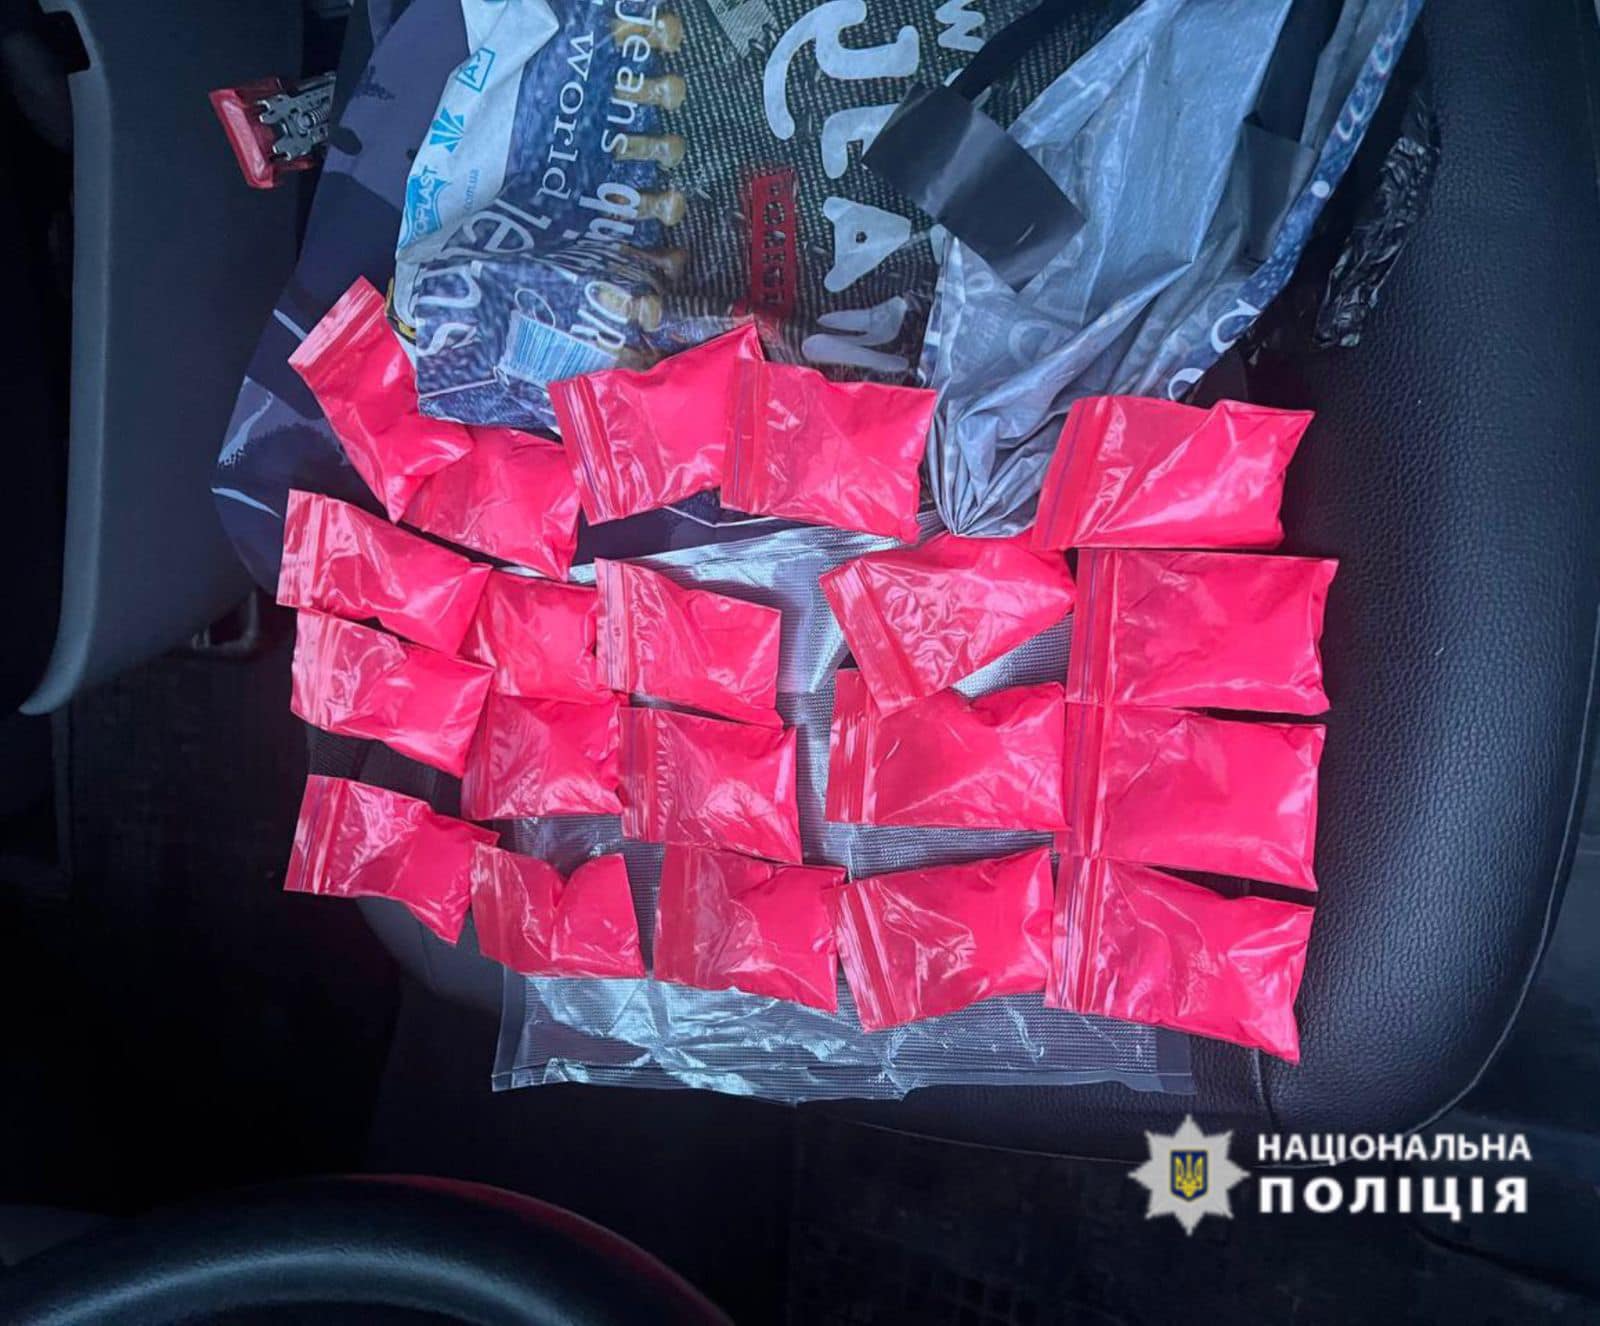 На Коломийщині у водія-порушника зайшли 20 пакетів з ймовірними наркотиками (ФОТО)